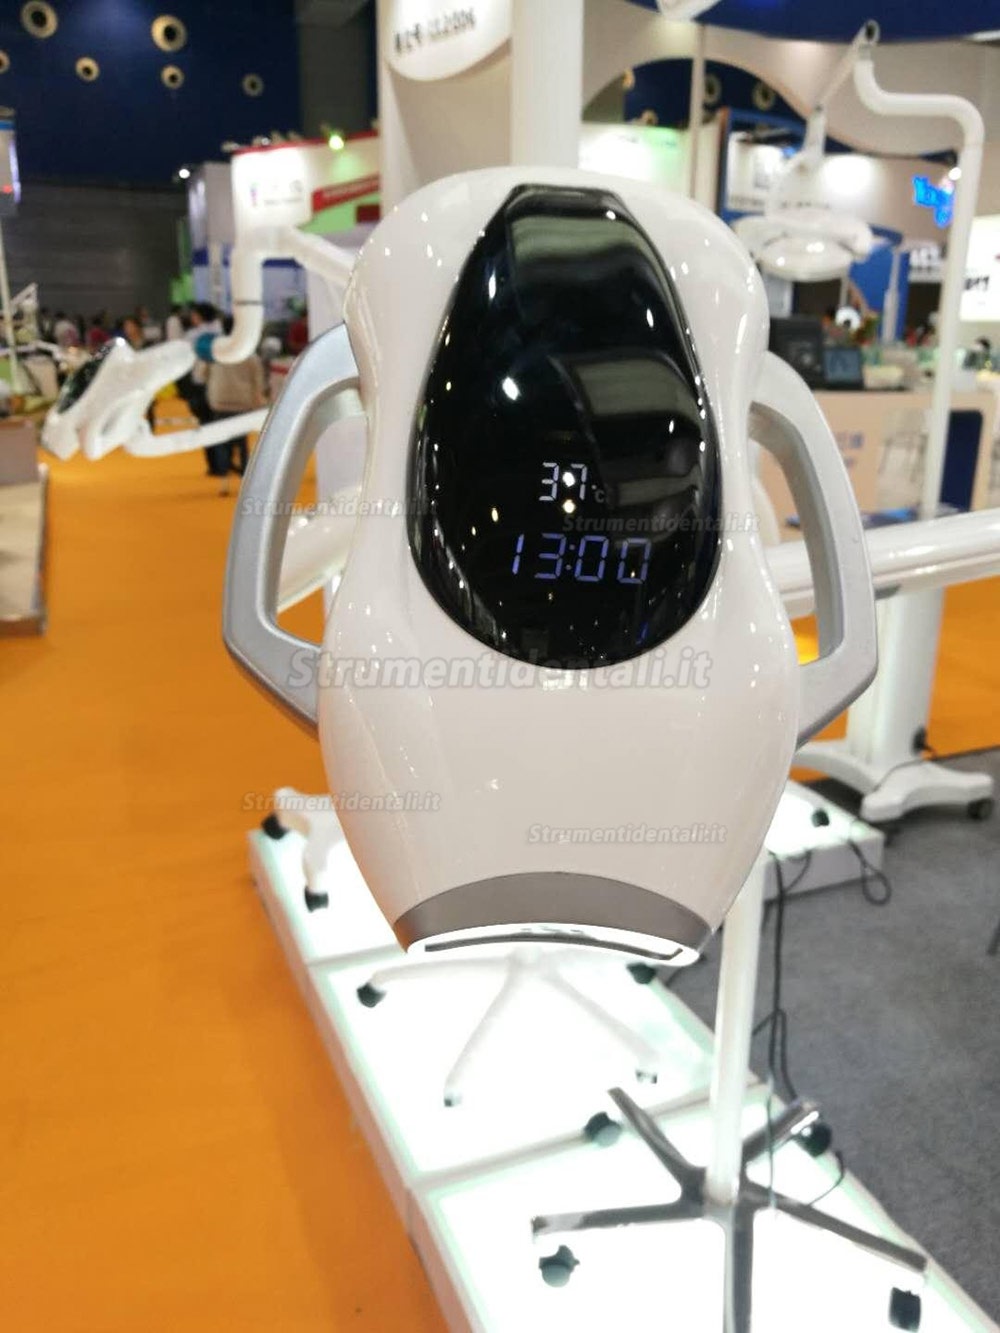 Saab Lampade led sbiancamento dentale con funzione termostato intelligente